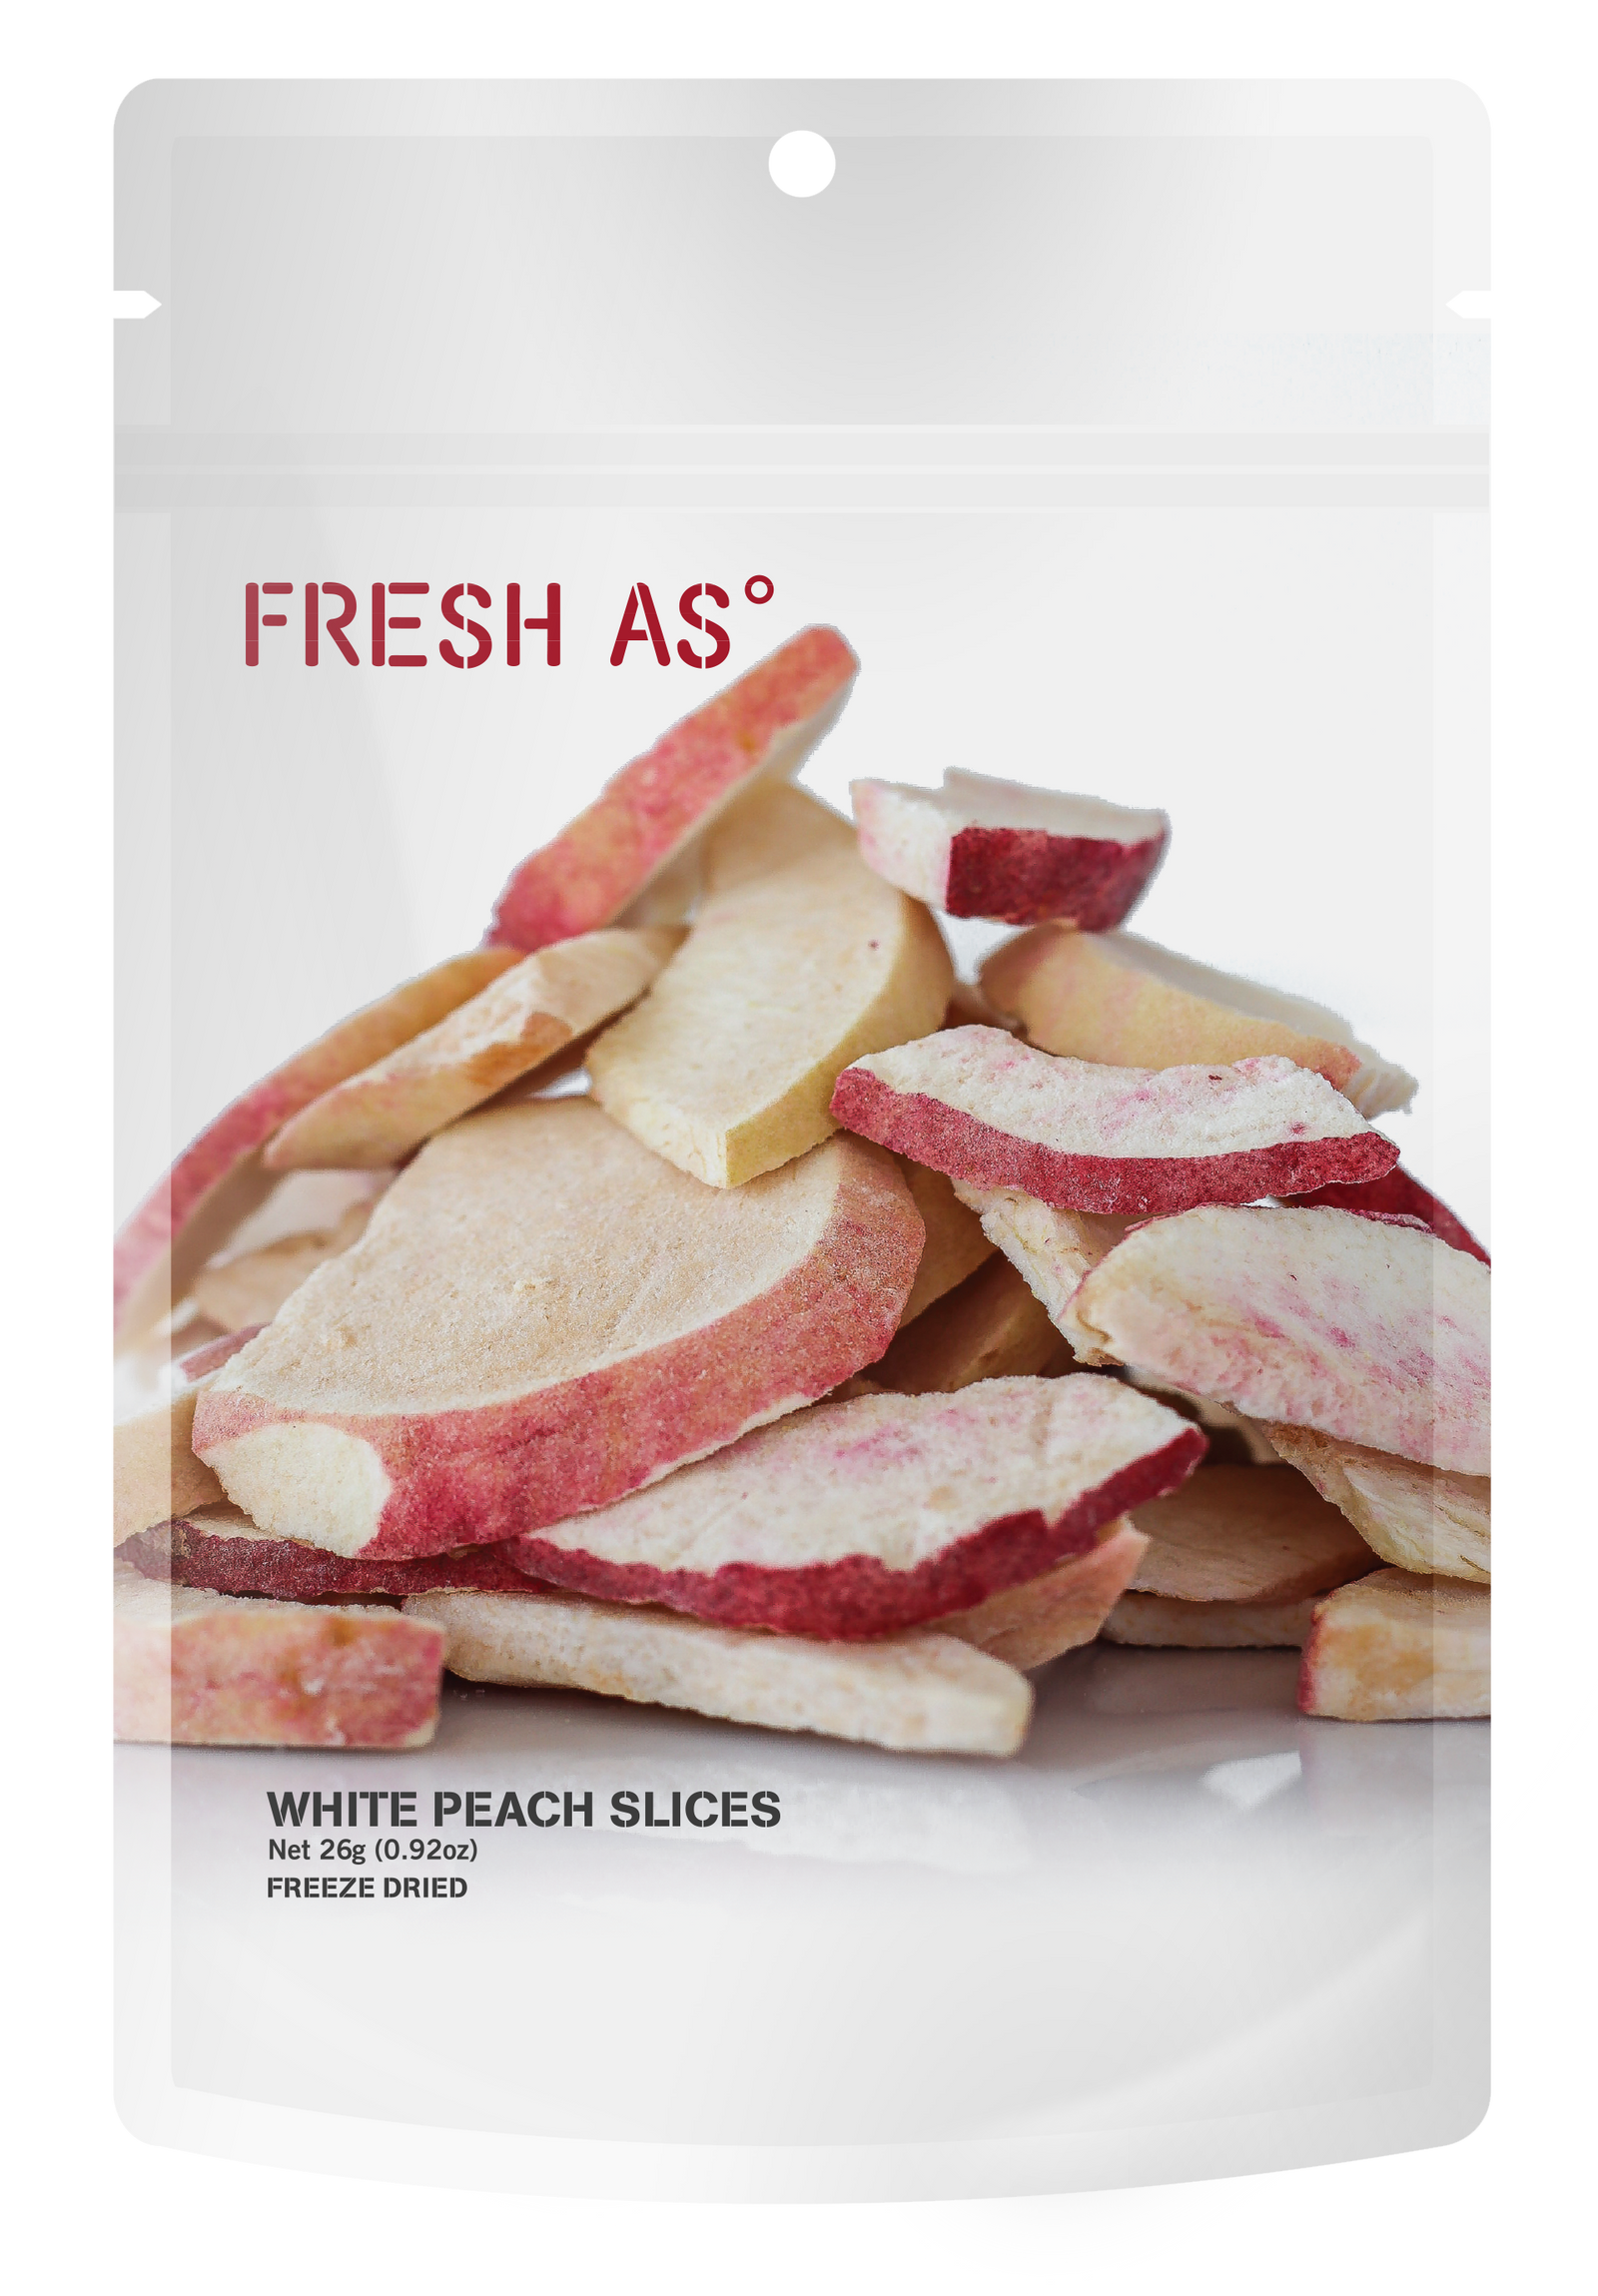 White Peach slice 26g